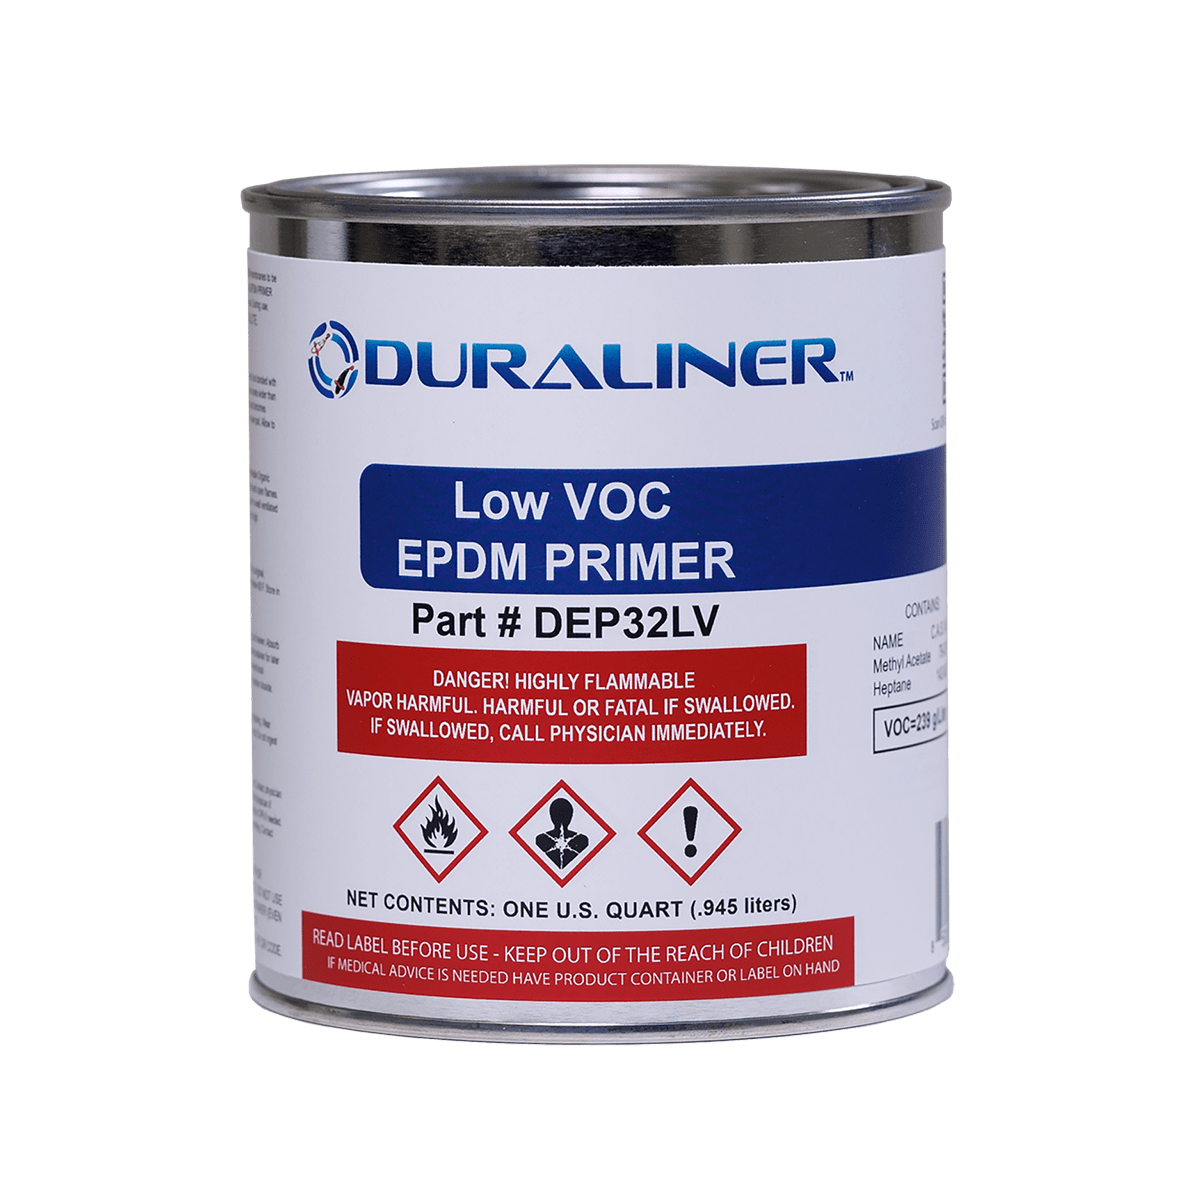 EasyPro Pond Liner and Accessories LVOC EPDM Primer- 1 qt. DuraLiner EPDM Primer